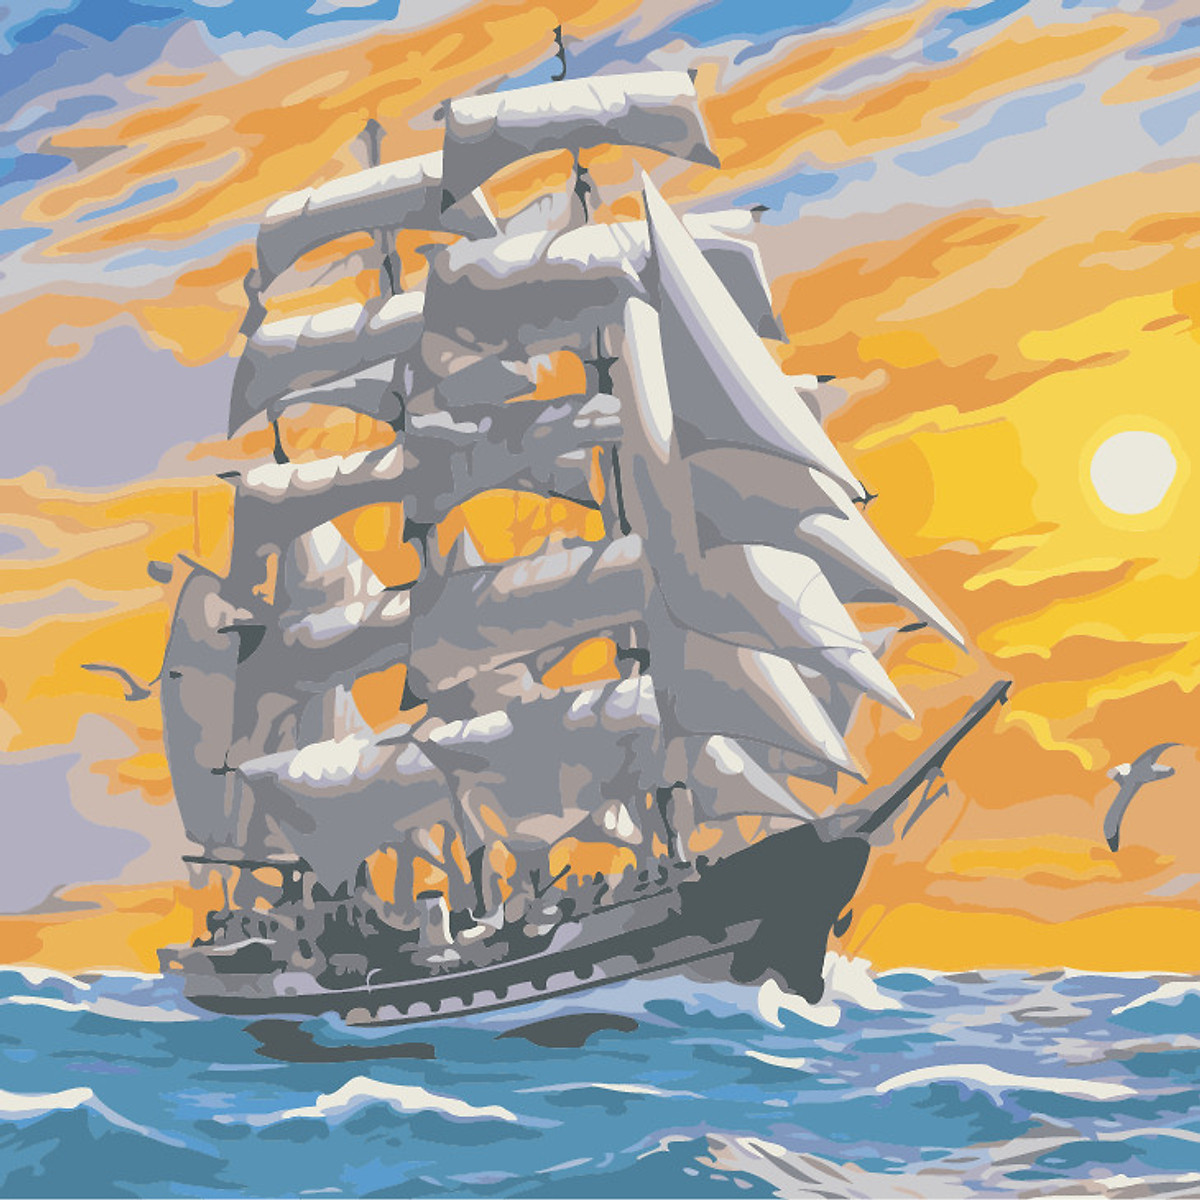 Xem hơn 100 ảnh về hình vẽ con thuyền  daotaonec